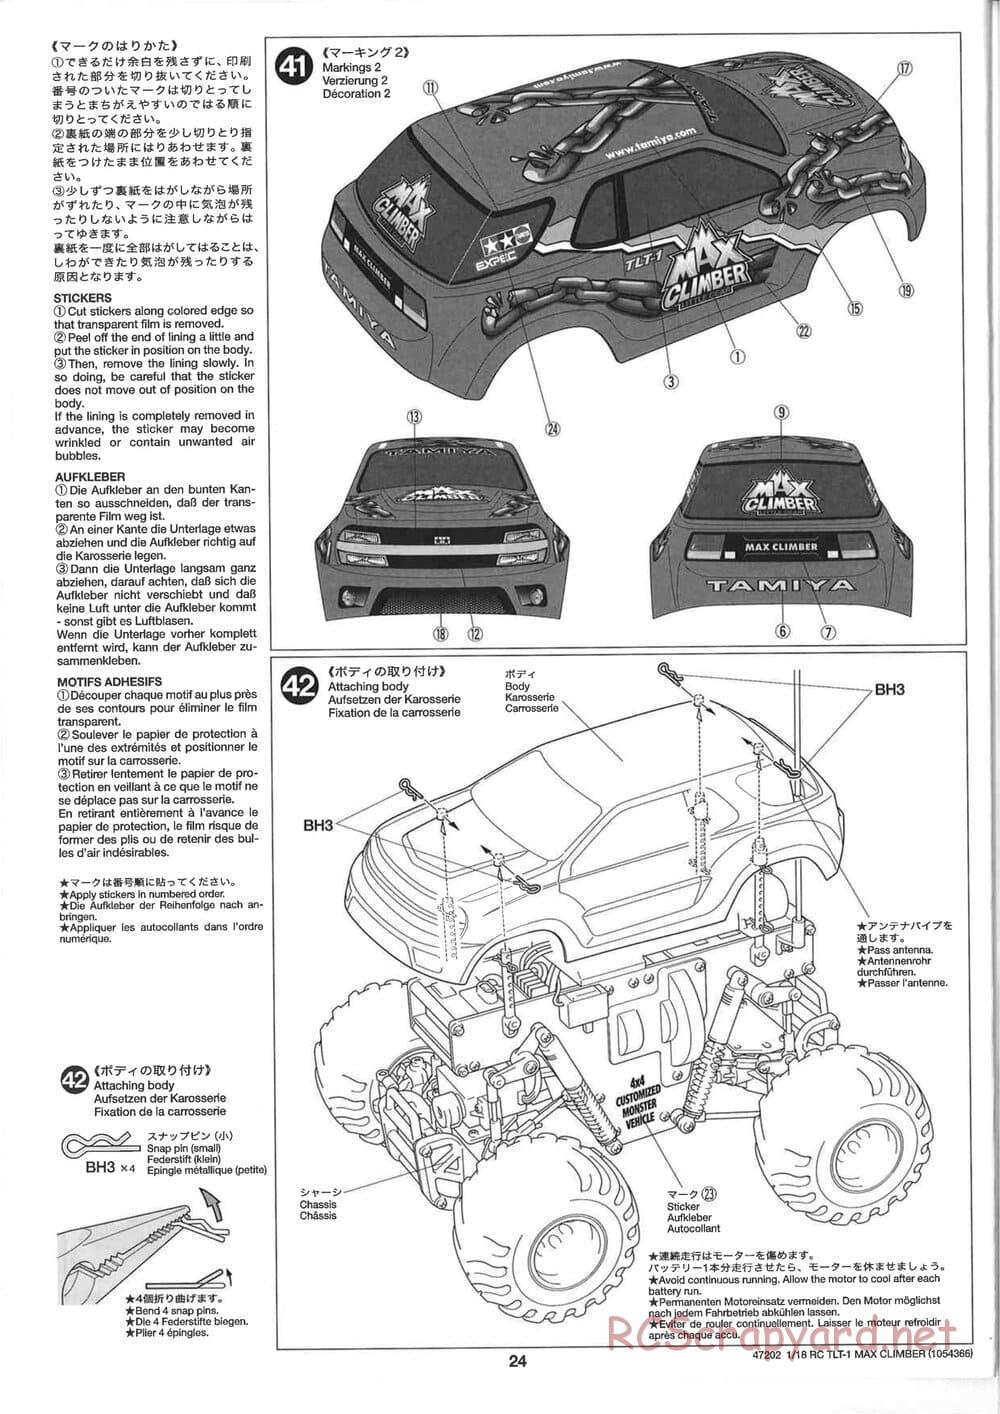 Tamiya - Max Climber - TLT-1 Chassis - Manual - Page 24